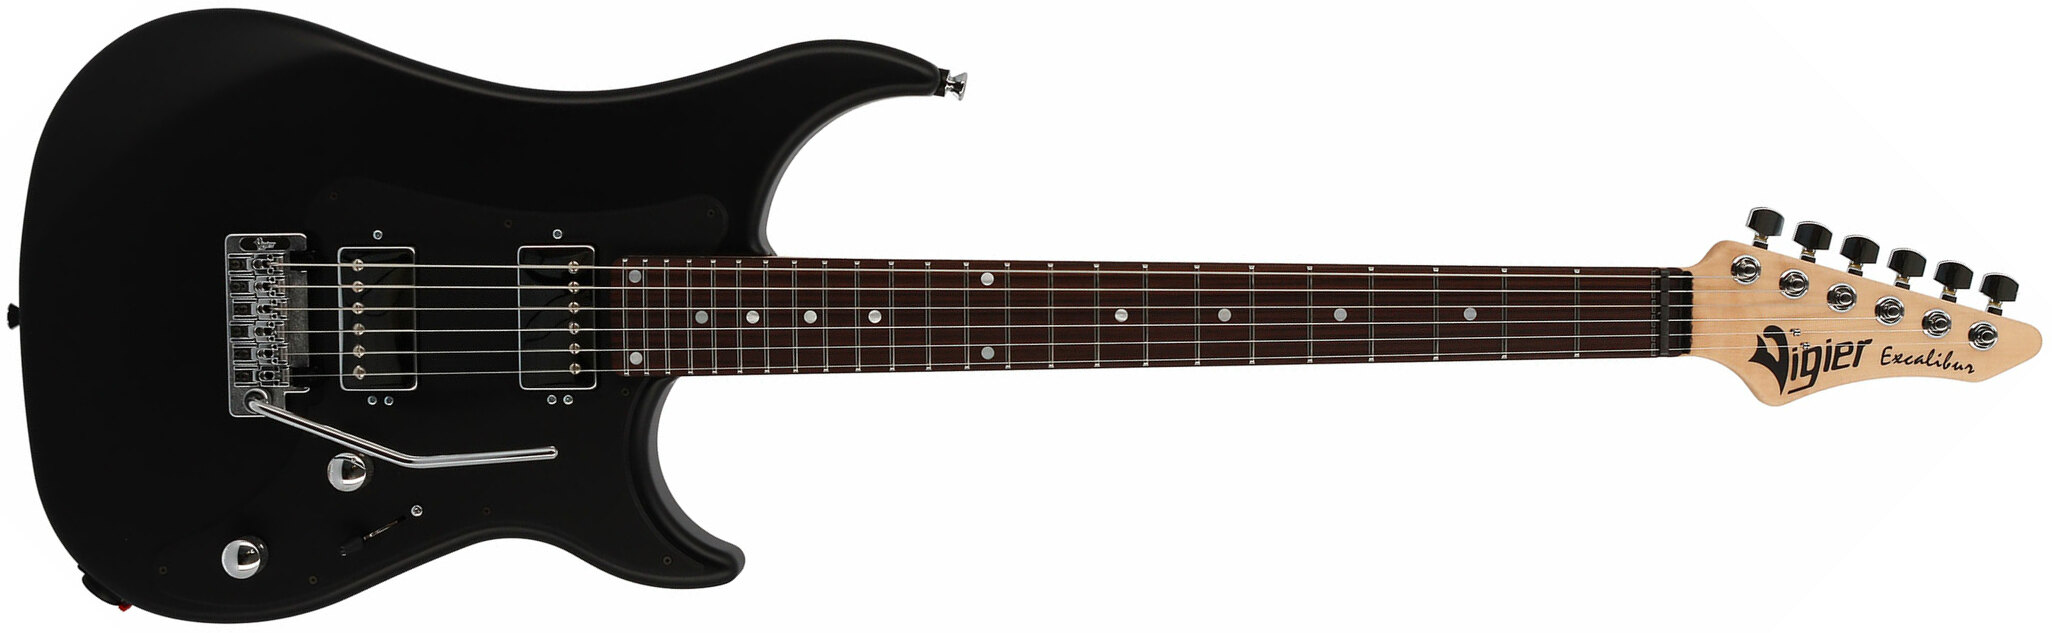 Vigier Excalibur Indus 2h Trem Rw - Black Matte - Guitarra eléctrica de doble corte. - Main picture